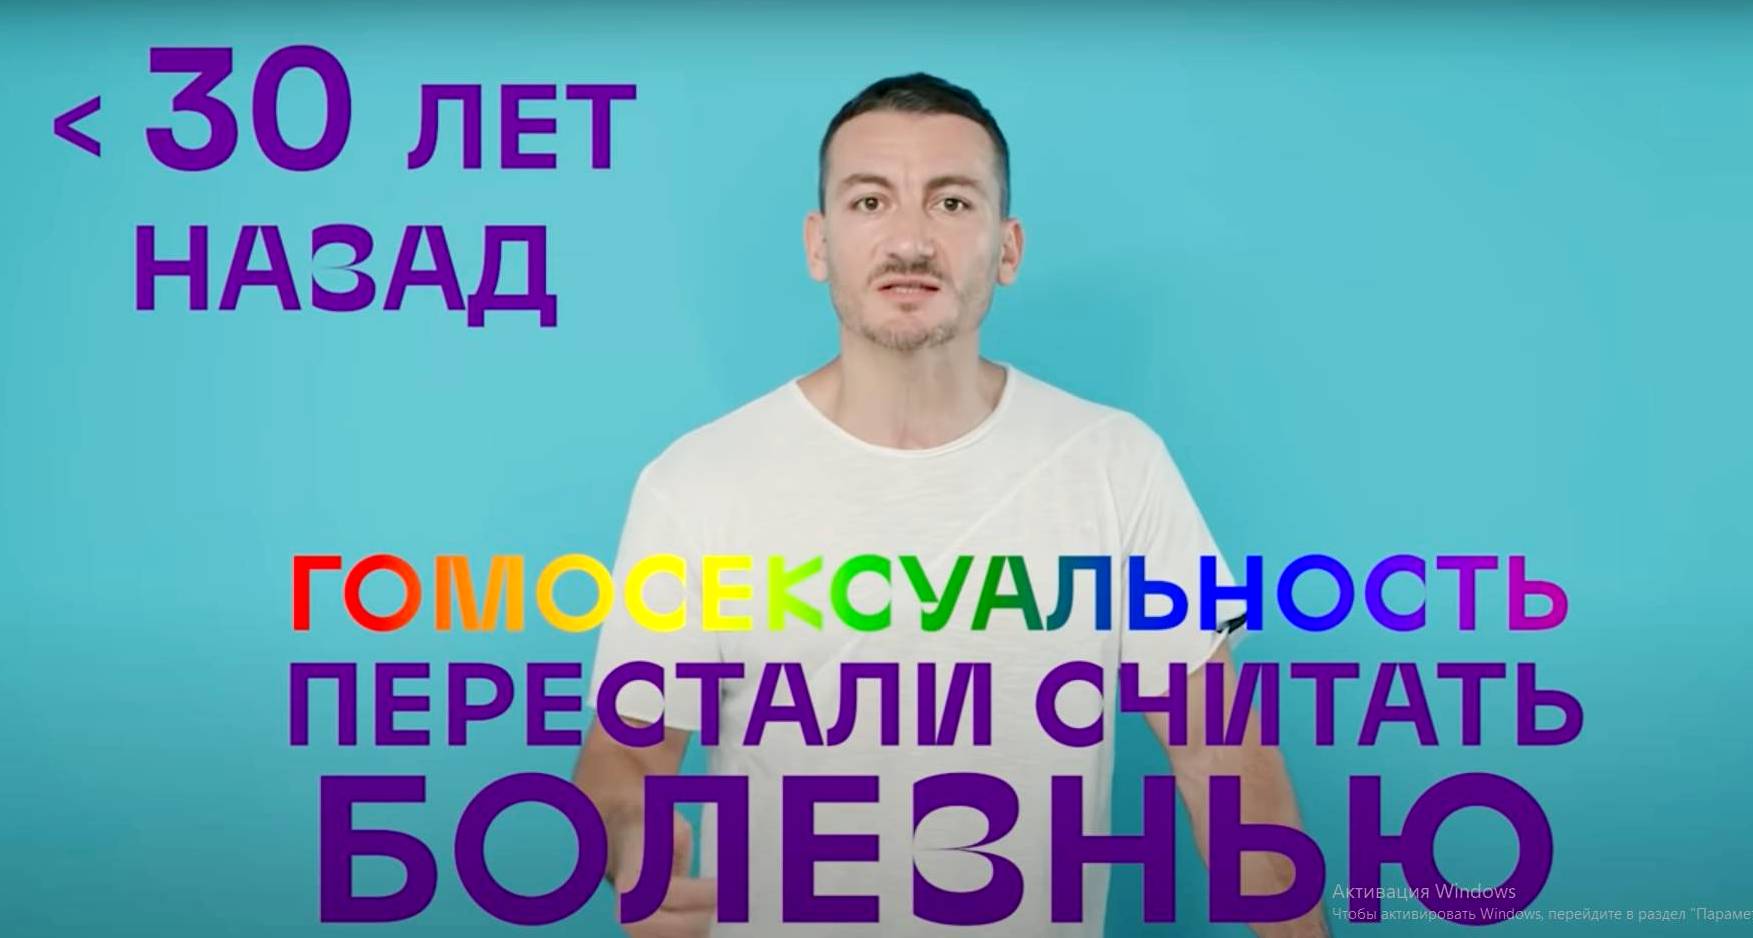 Об истории гомофобии Карен Шаинян рассказал в новом [видео]